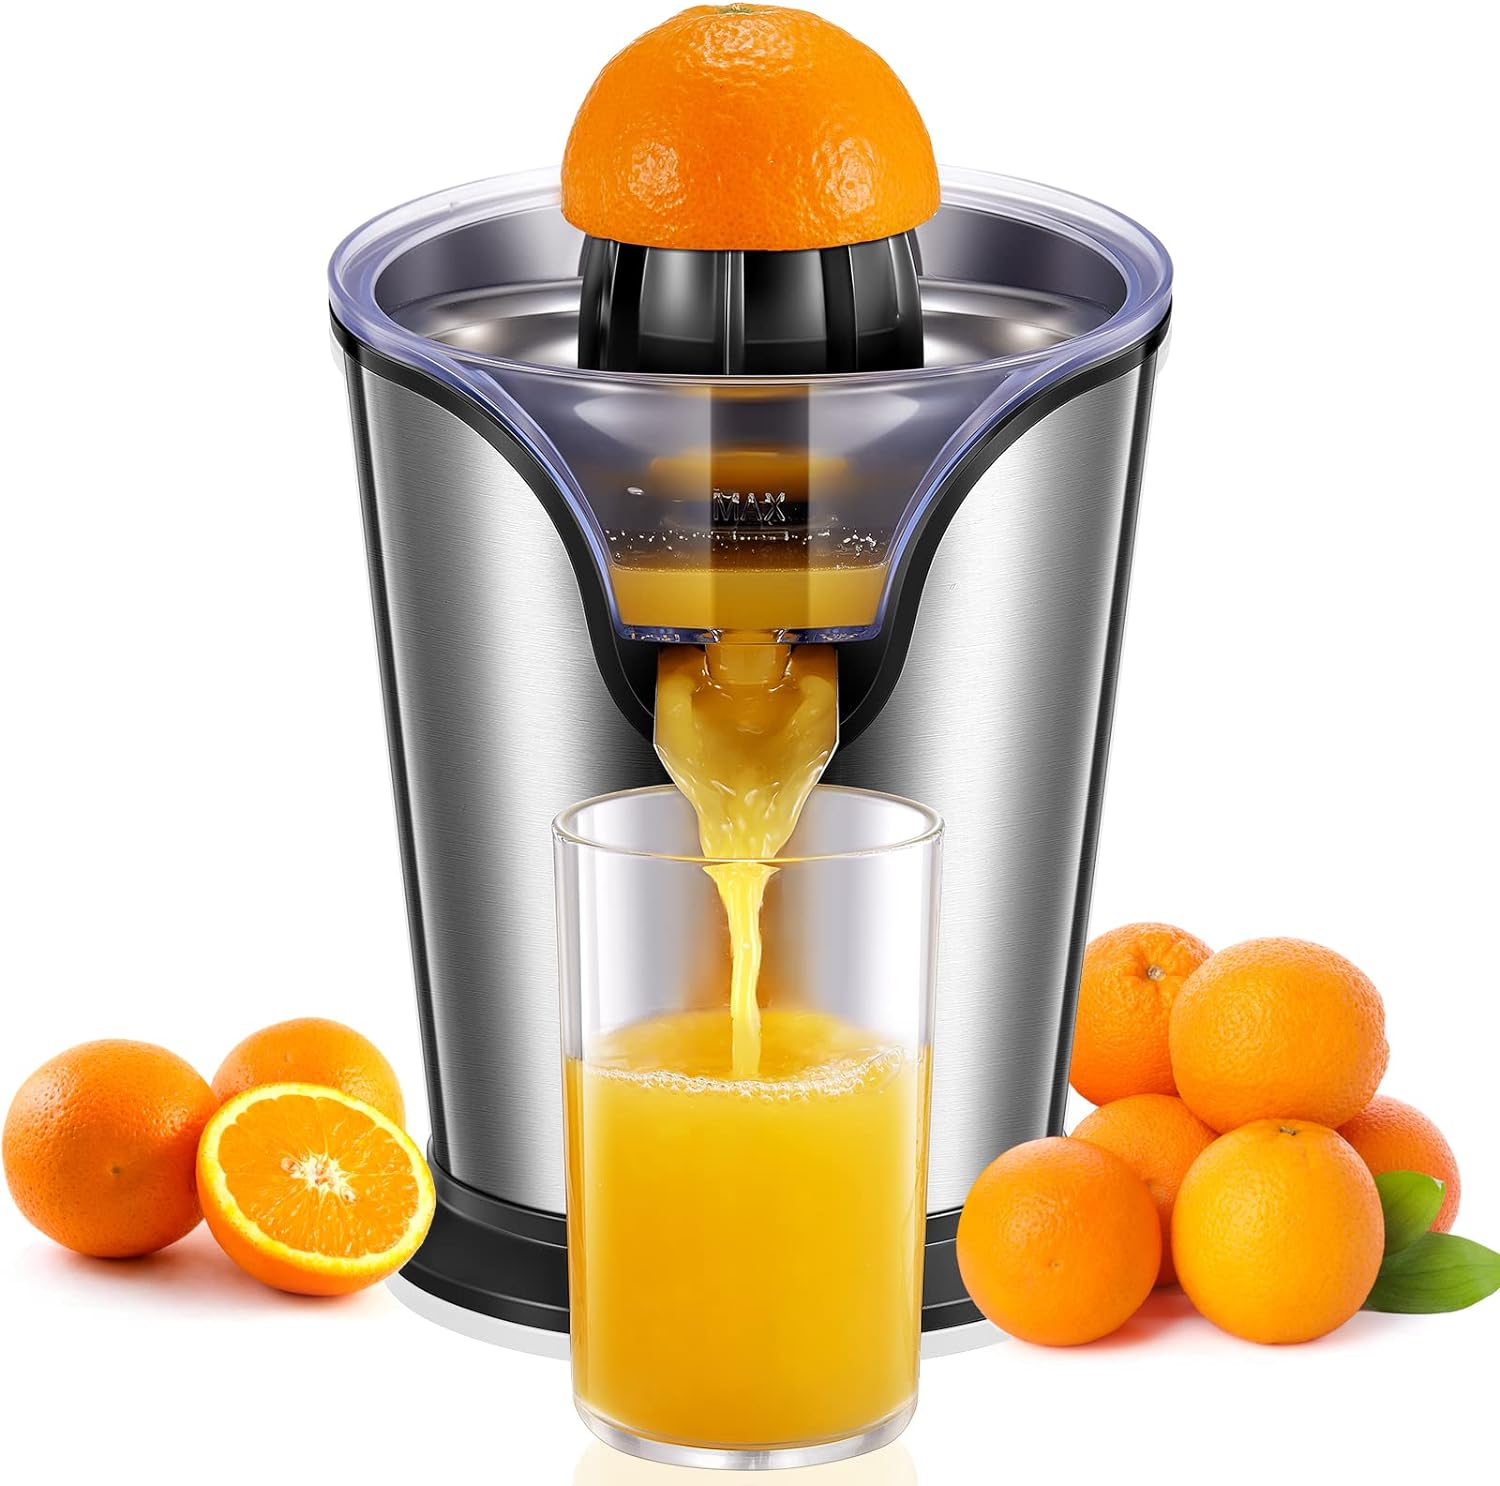 Presse-Agrumes Électrique - Pour jus d'orange, citron et autres